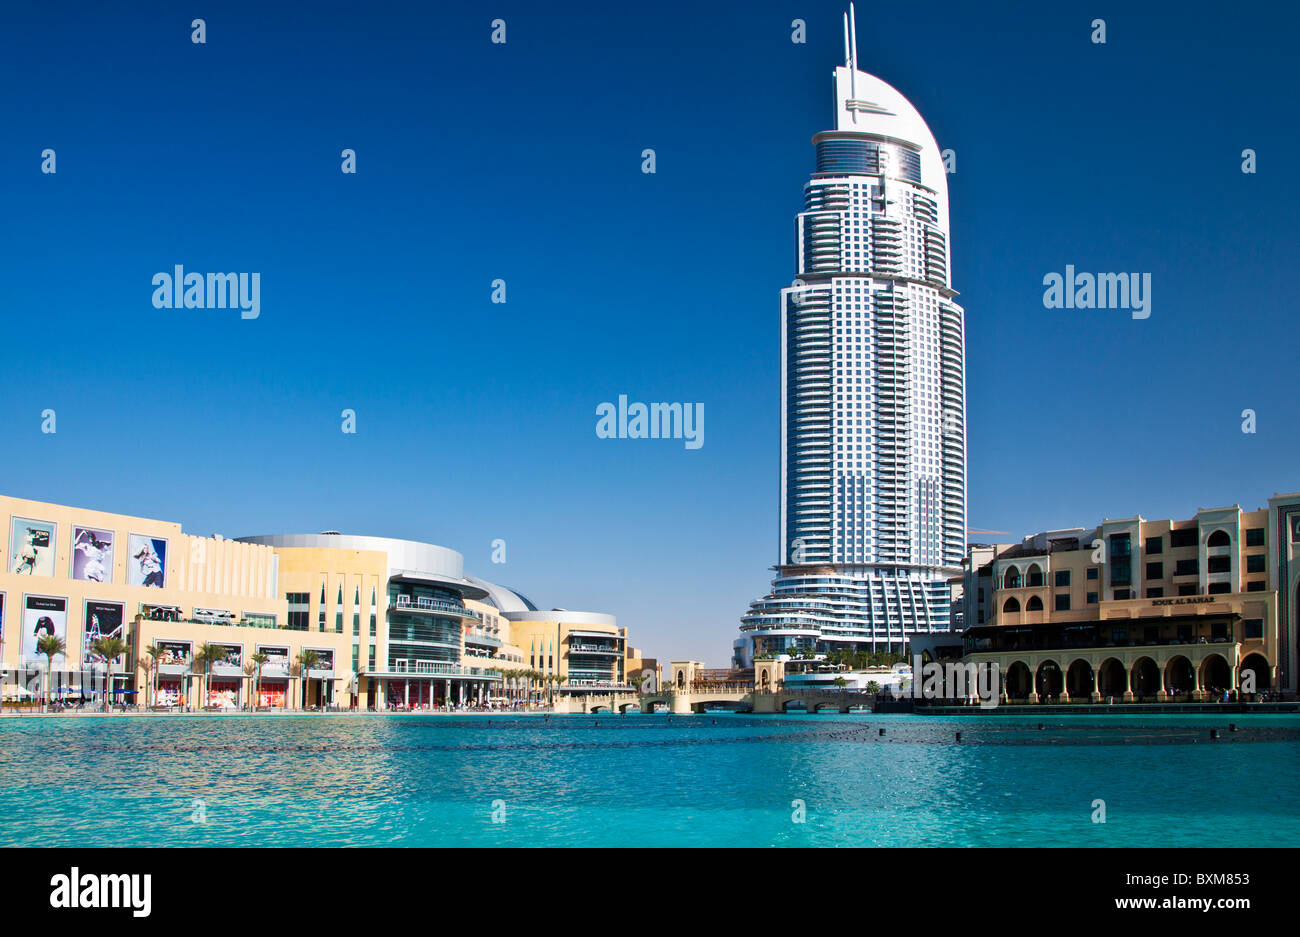 El centro comercial Dubai Mall y la dirección de un hotel de lujo de 5 estrellas Hotel y Souk Al Bahar, en el centro de Dubai, Emiratos Árabes Unidos, EAU Foto de stock